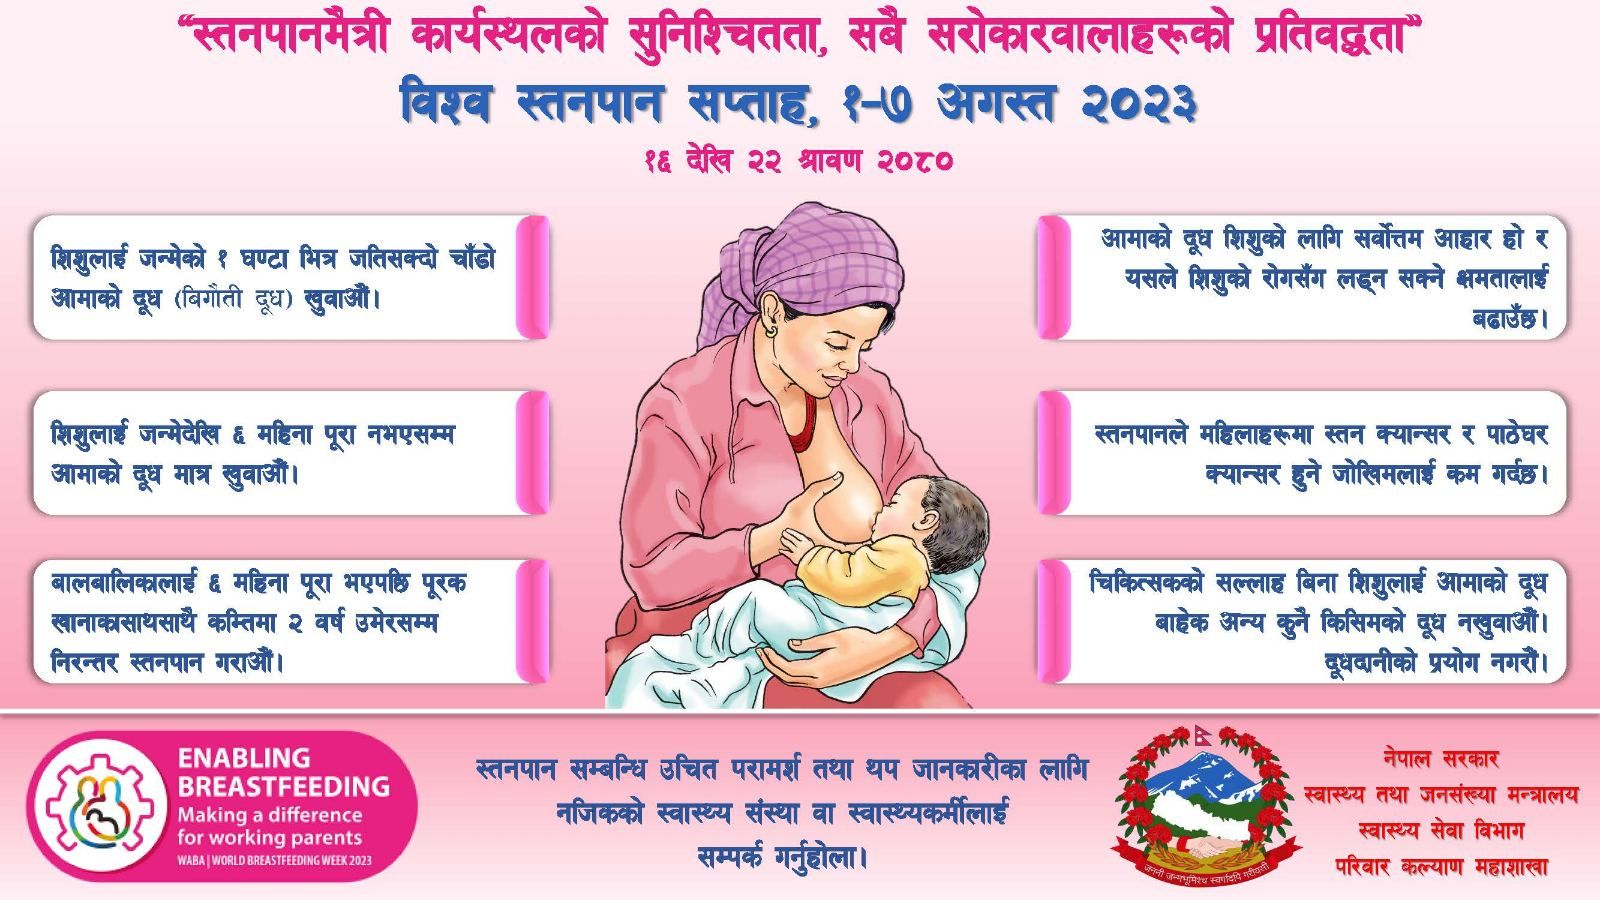 World Breastfeeding week